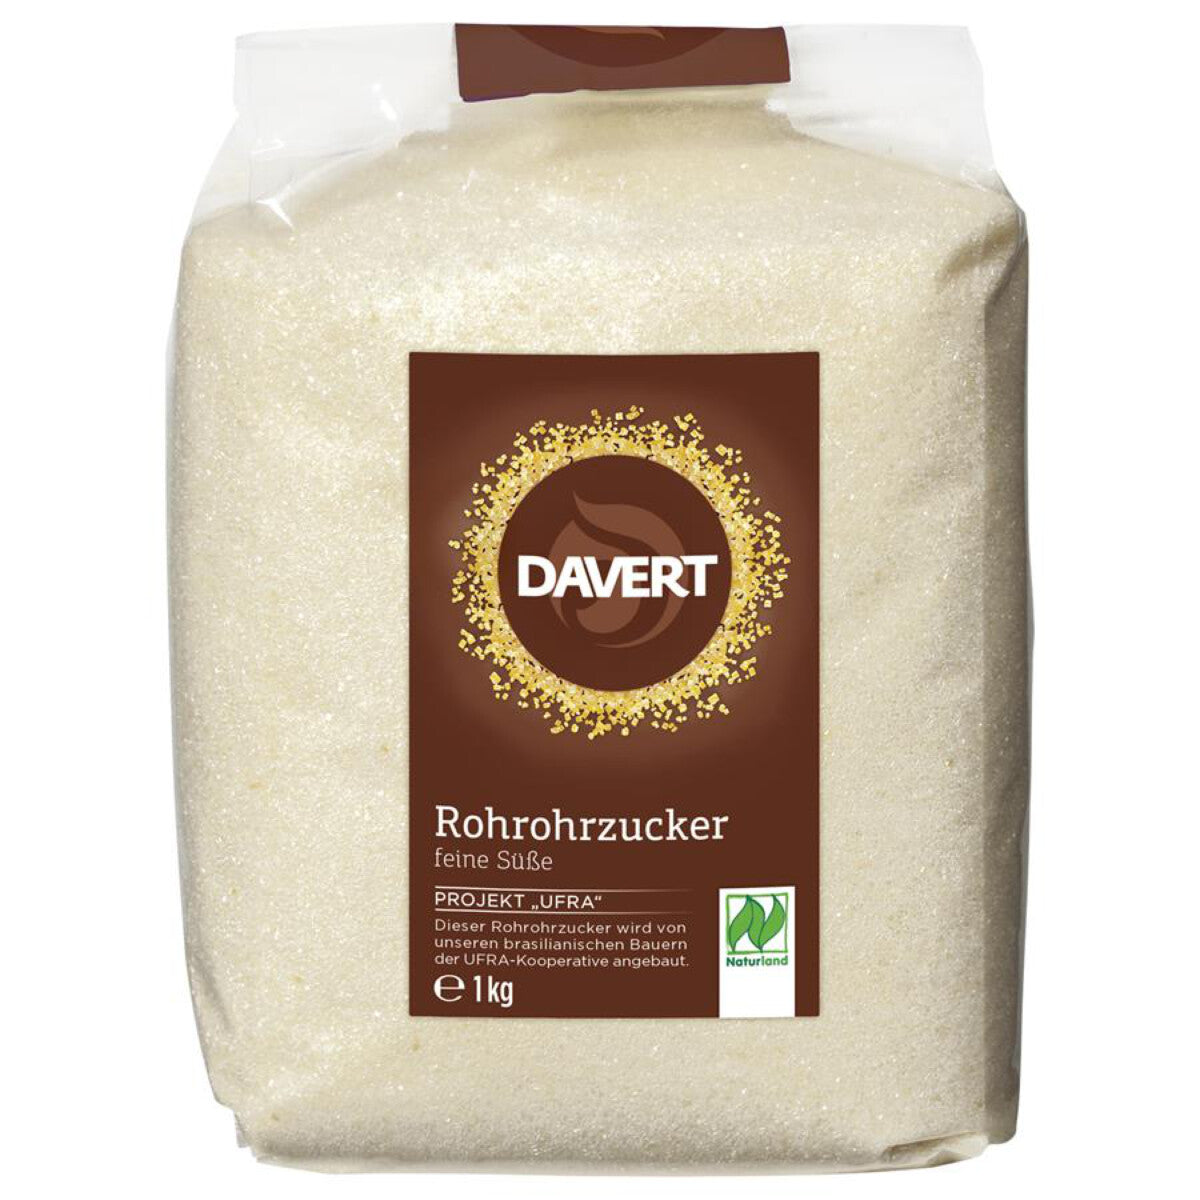 DAVERT Rohrohrzucker hell - 1 kg